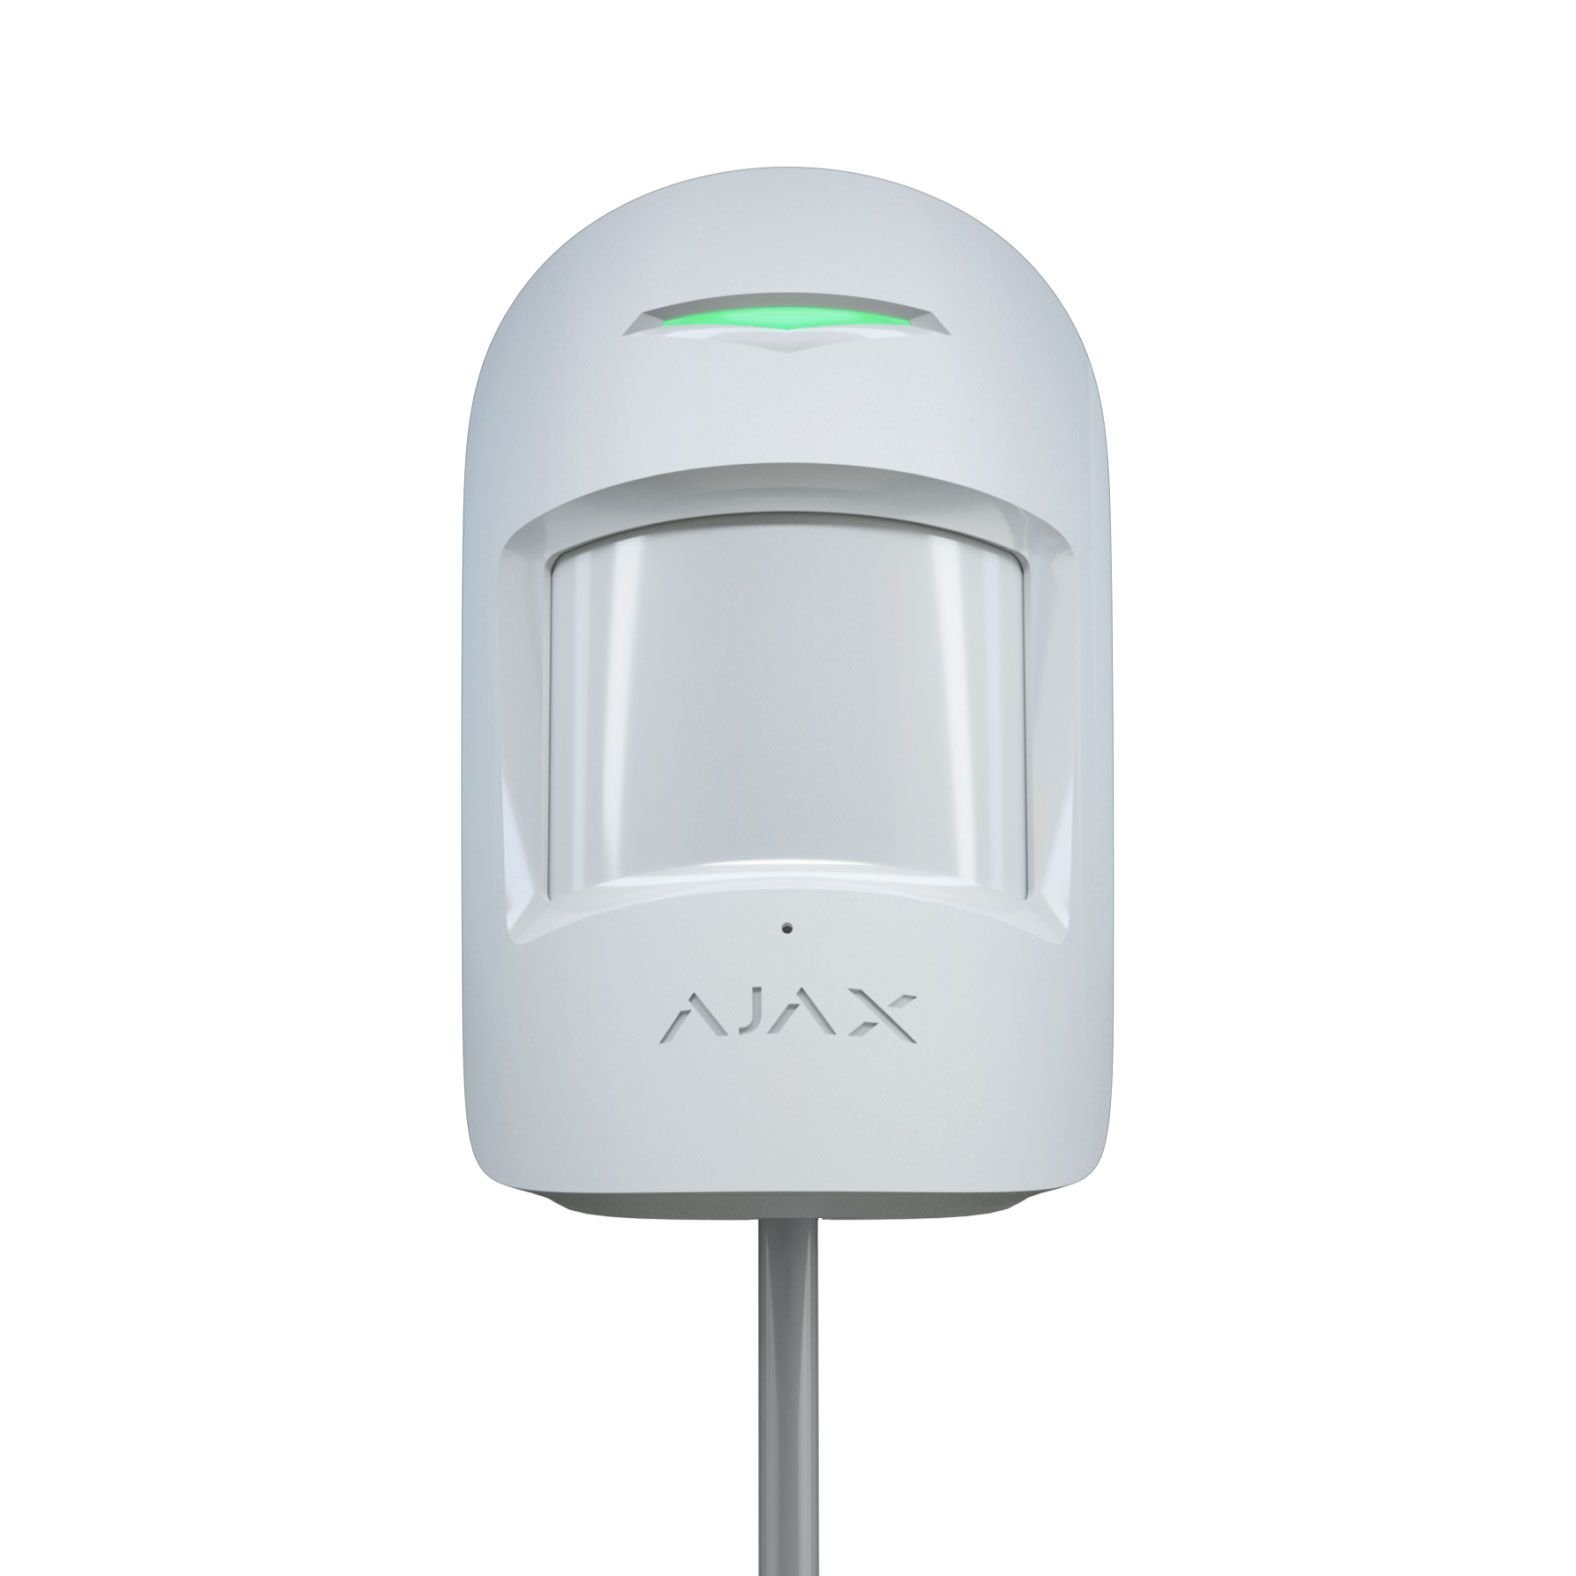 Ajax CombiProtect Fibra White проводной датчик движения и разбития стекла